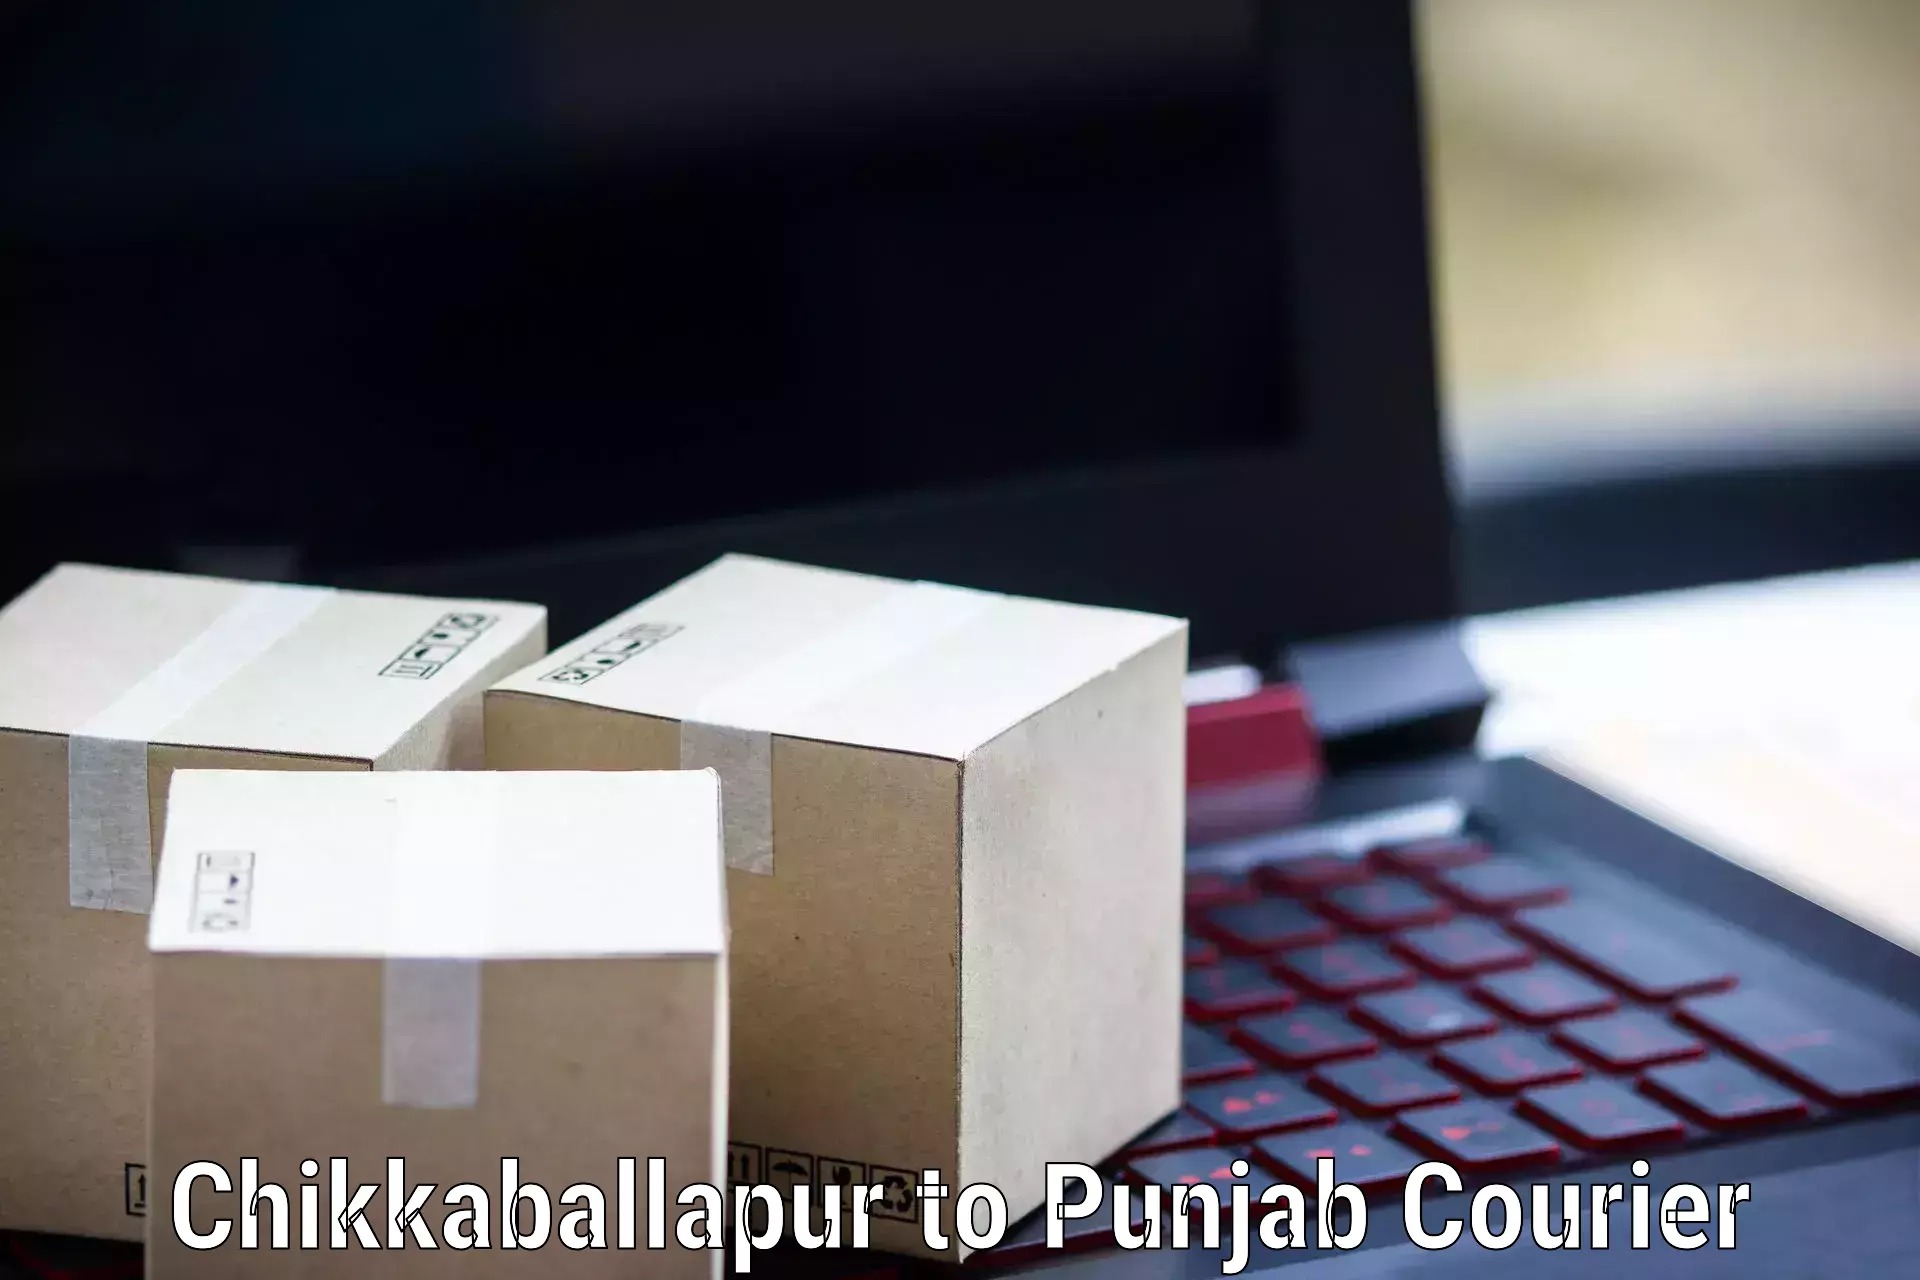 High-speed parcel service Chikkaballapur to Malerkotla